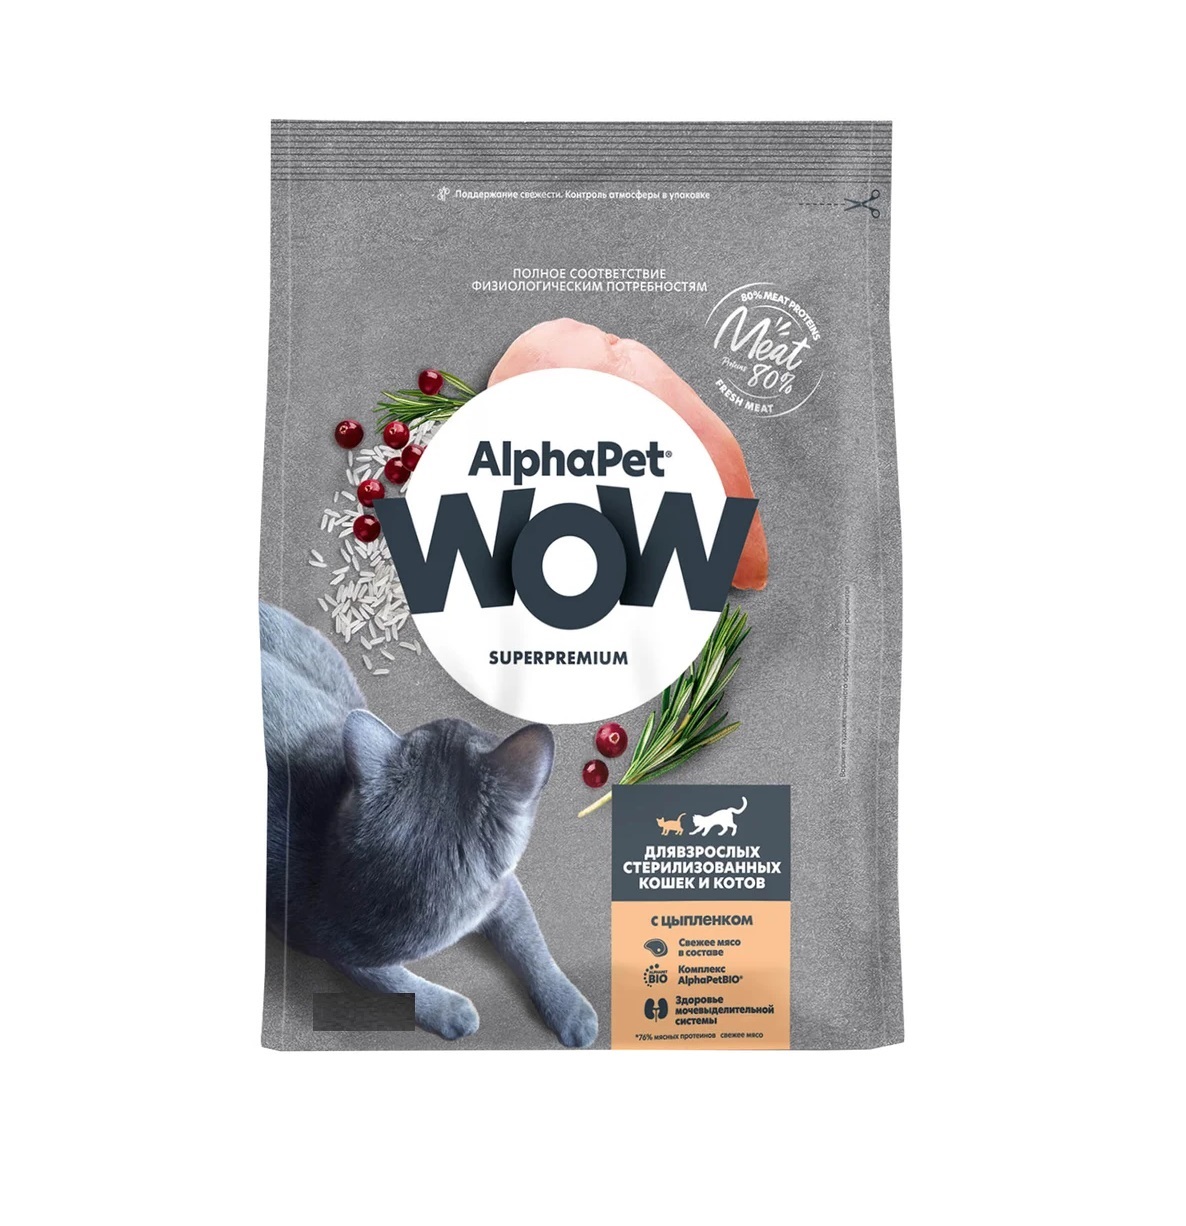 АльфаПет WOW 750гр - для Стерилизованных кошек, Цыпленок (Alpha Pet WOW)